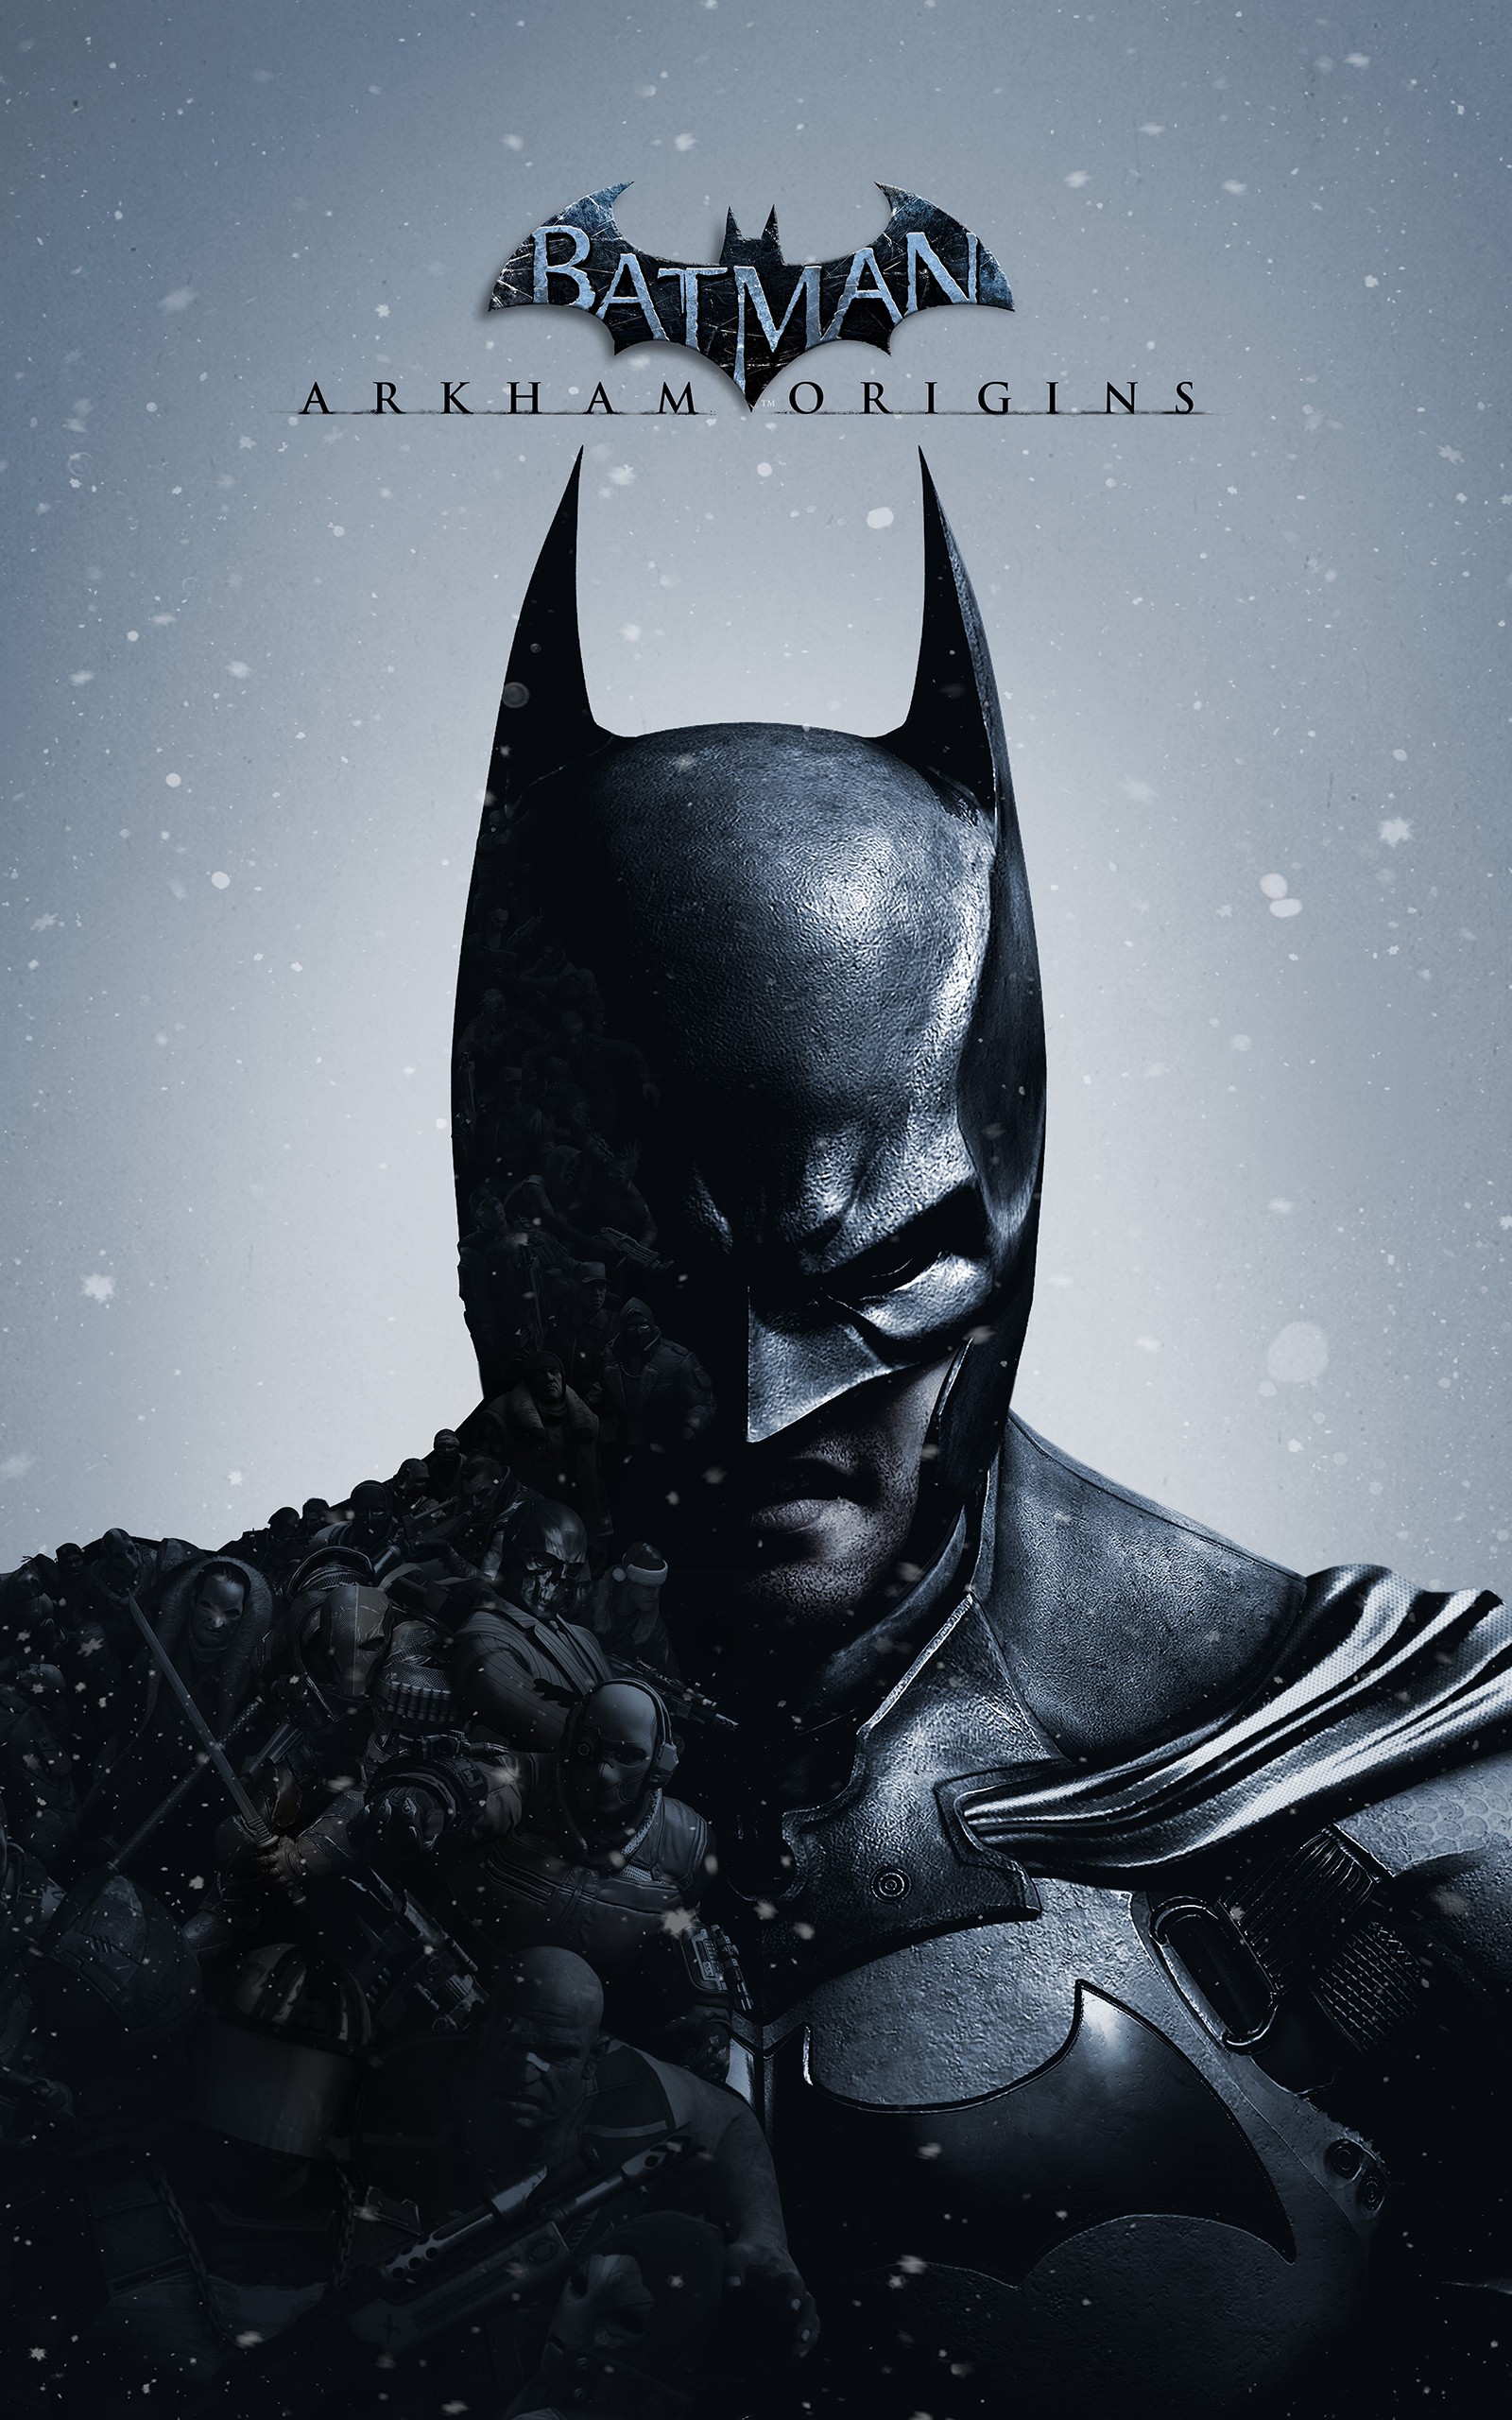 Batman Arkham Origins, Batman, Video Games, Portrait - Arkham Origins Cover Art - HD Wallpaper 